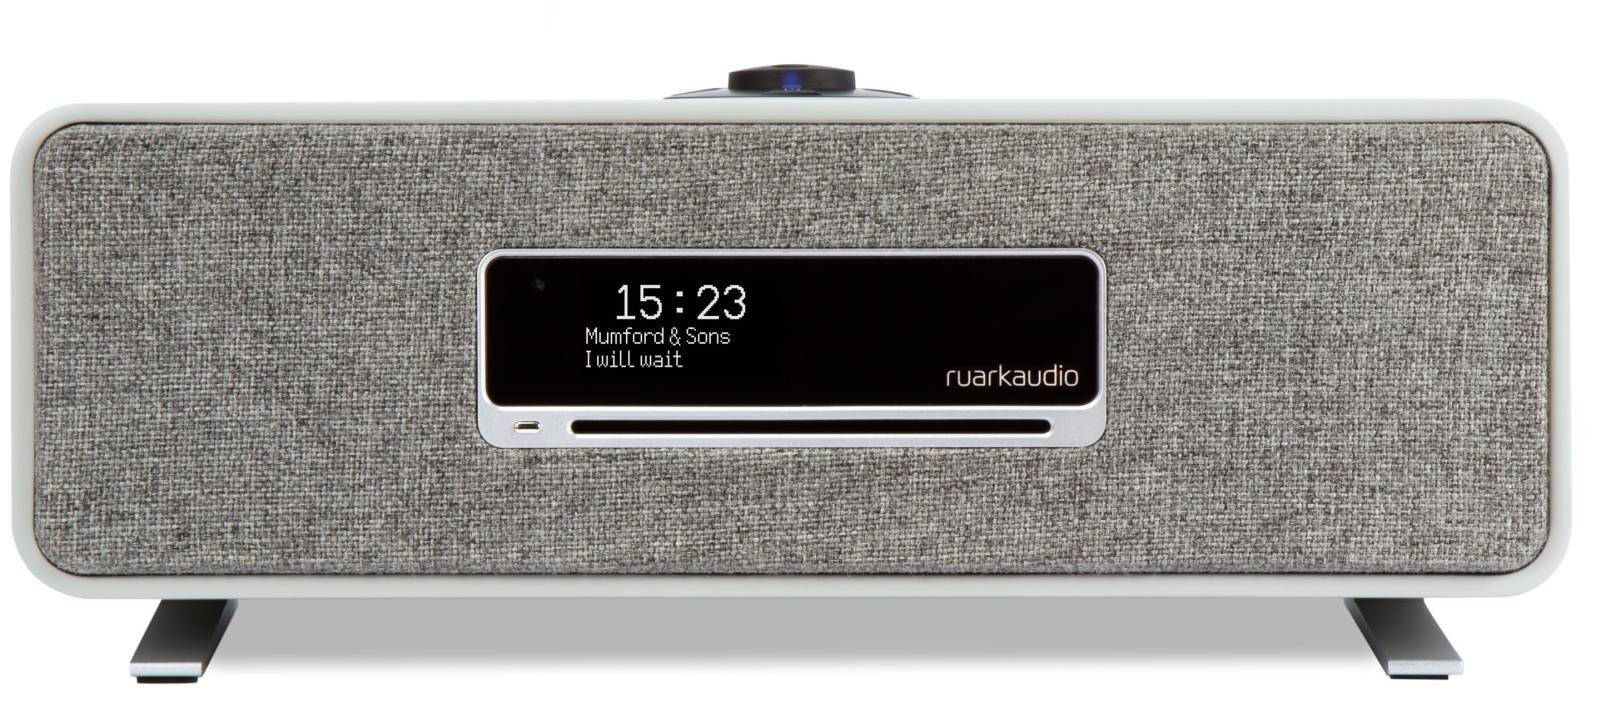 ruark audio R3 MK1 Stereoanlage, WiFi Streaming unterstützt Tidal, Deezer  und Amazon Music - Multiformat CD Spieler online kaufen | OTTO